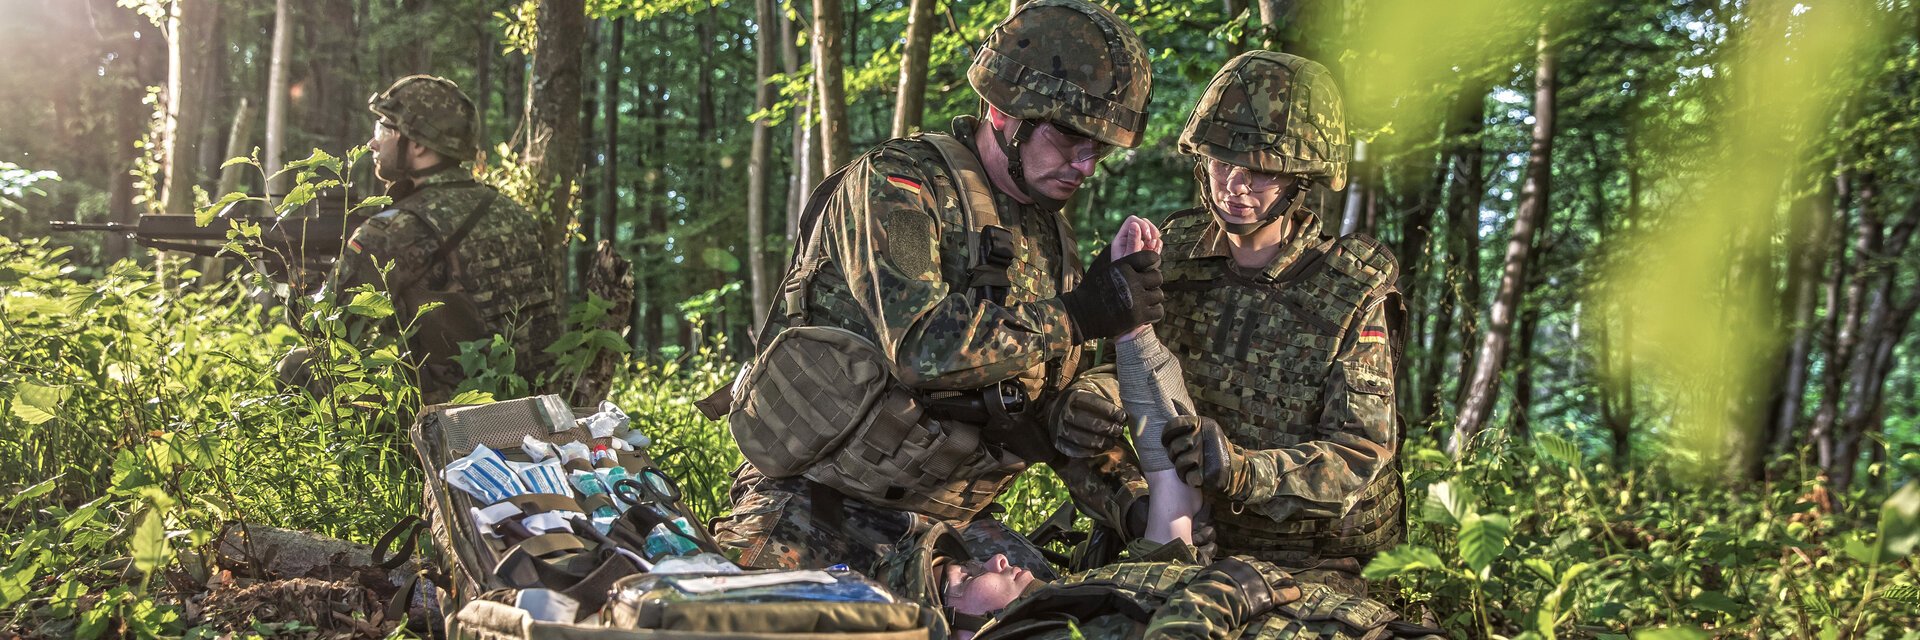 Soldaten im Wald bei einem medizinischen Einsatz